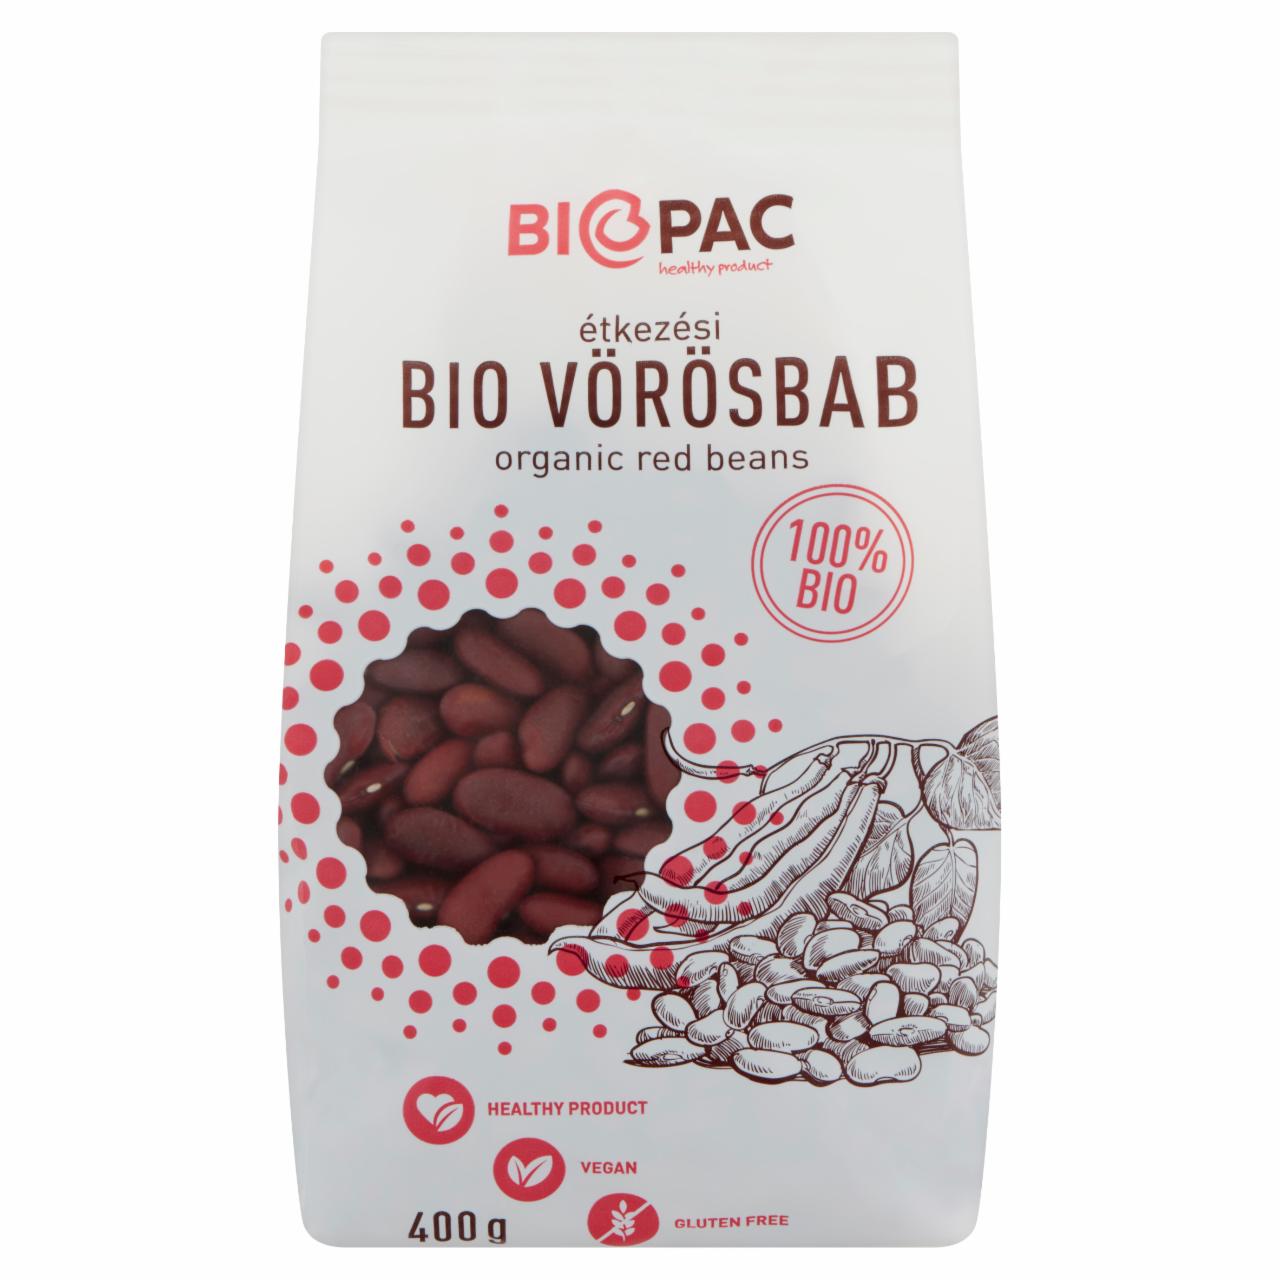 Képek - Biopac étkezési BIO vörösbab 400 g